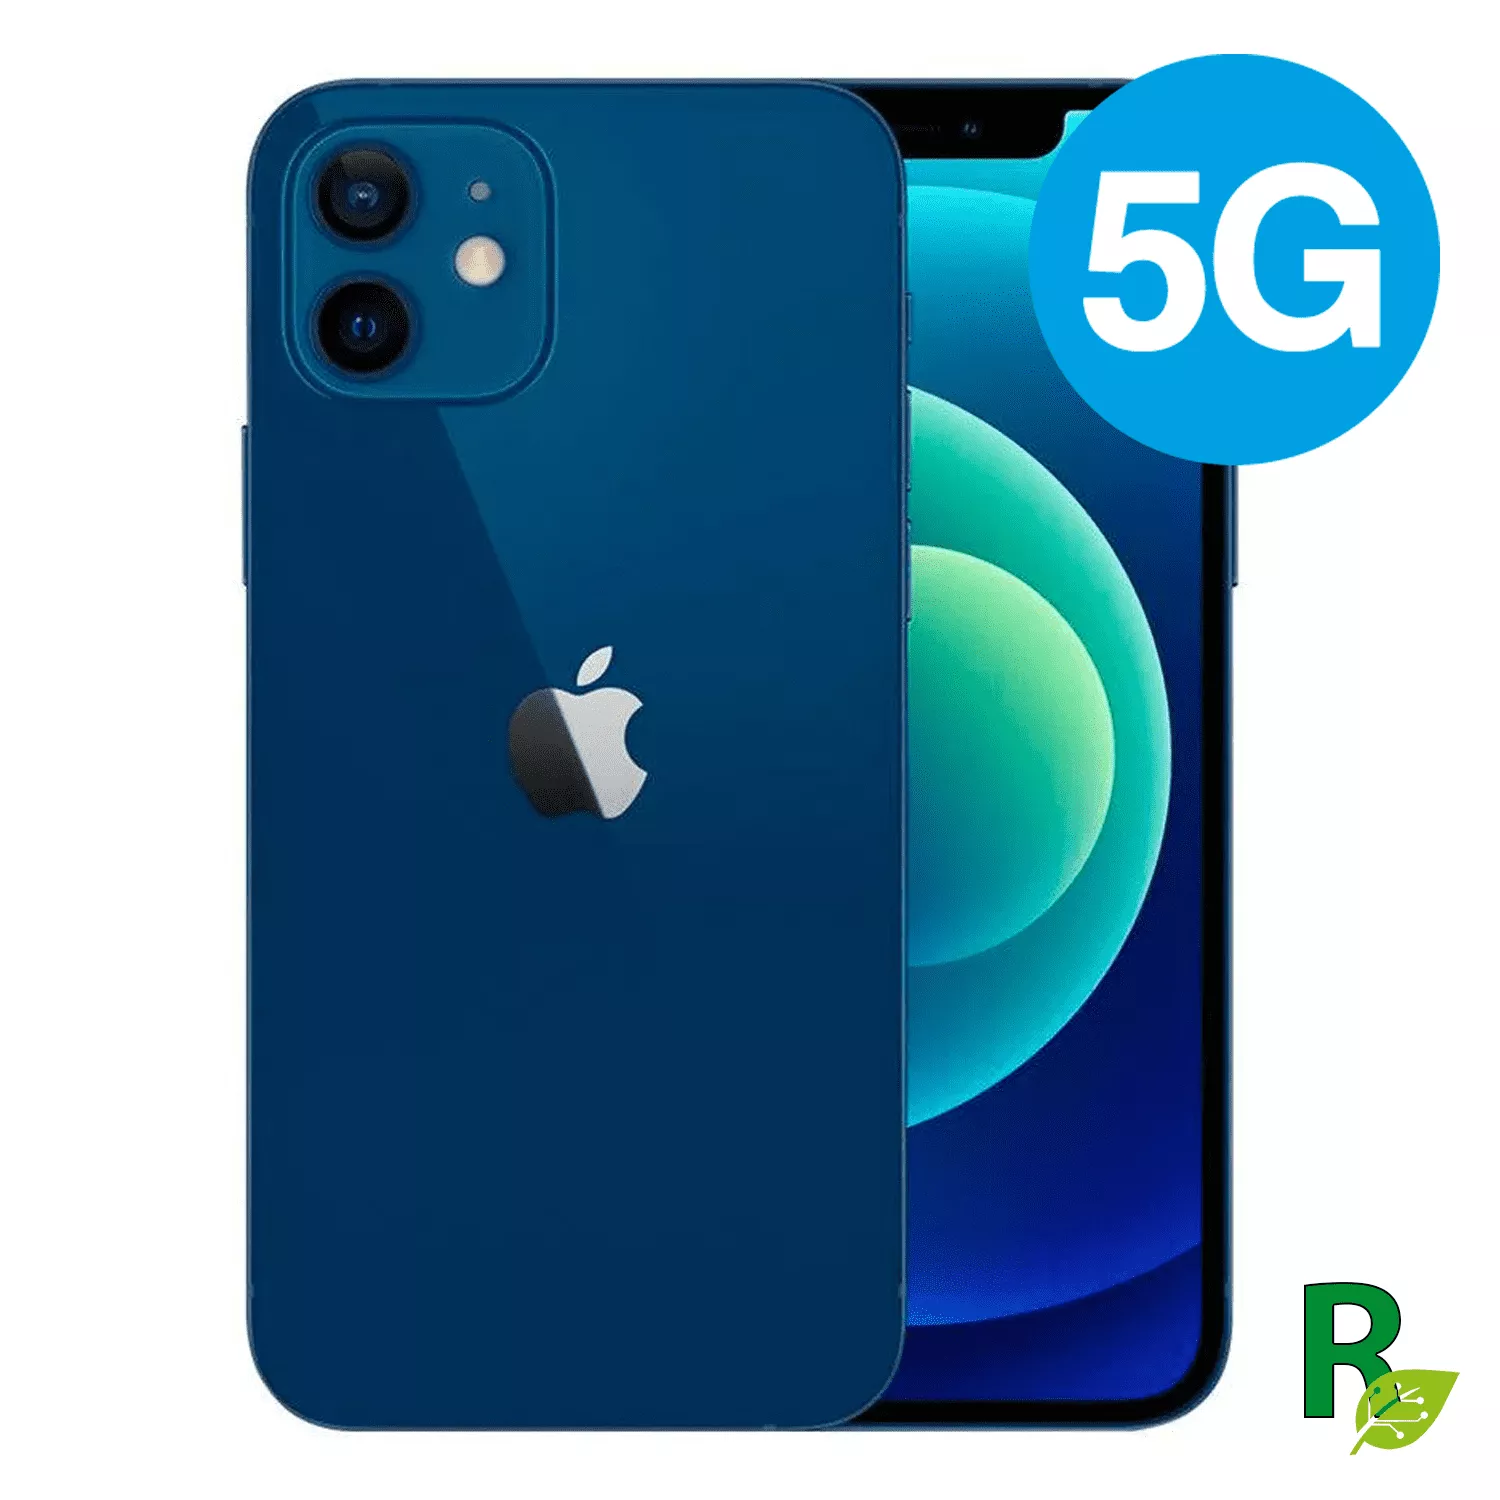 iPhone 12 Mini 64GB - Blue - 12MINIBLUE64AB - Cat. AB 12M64IPH5-Reacondicionado